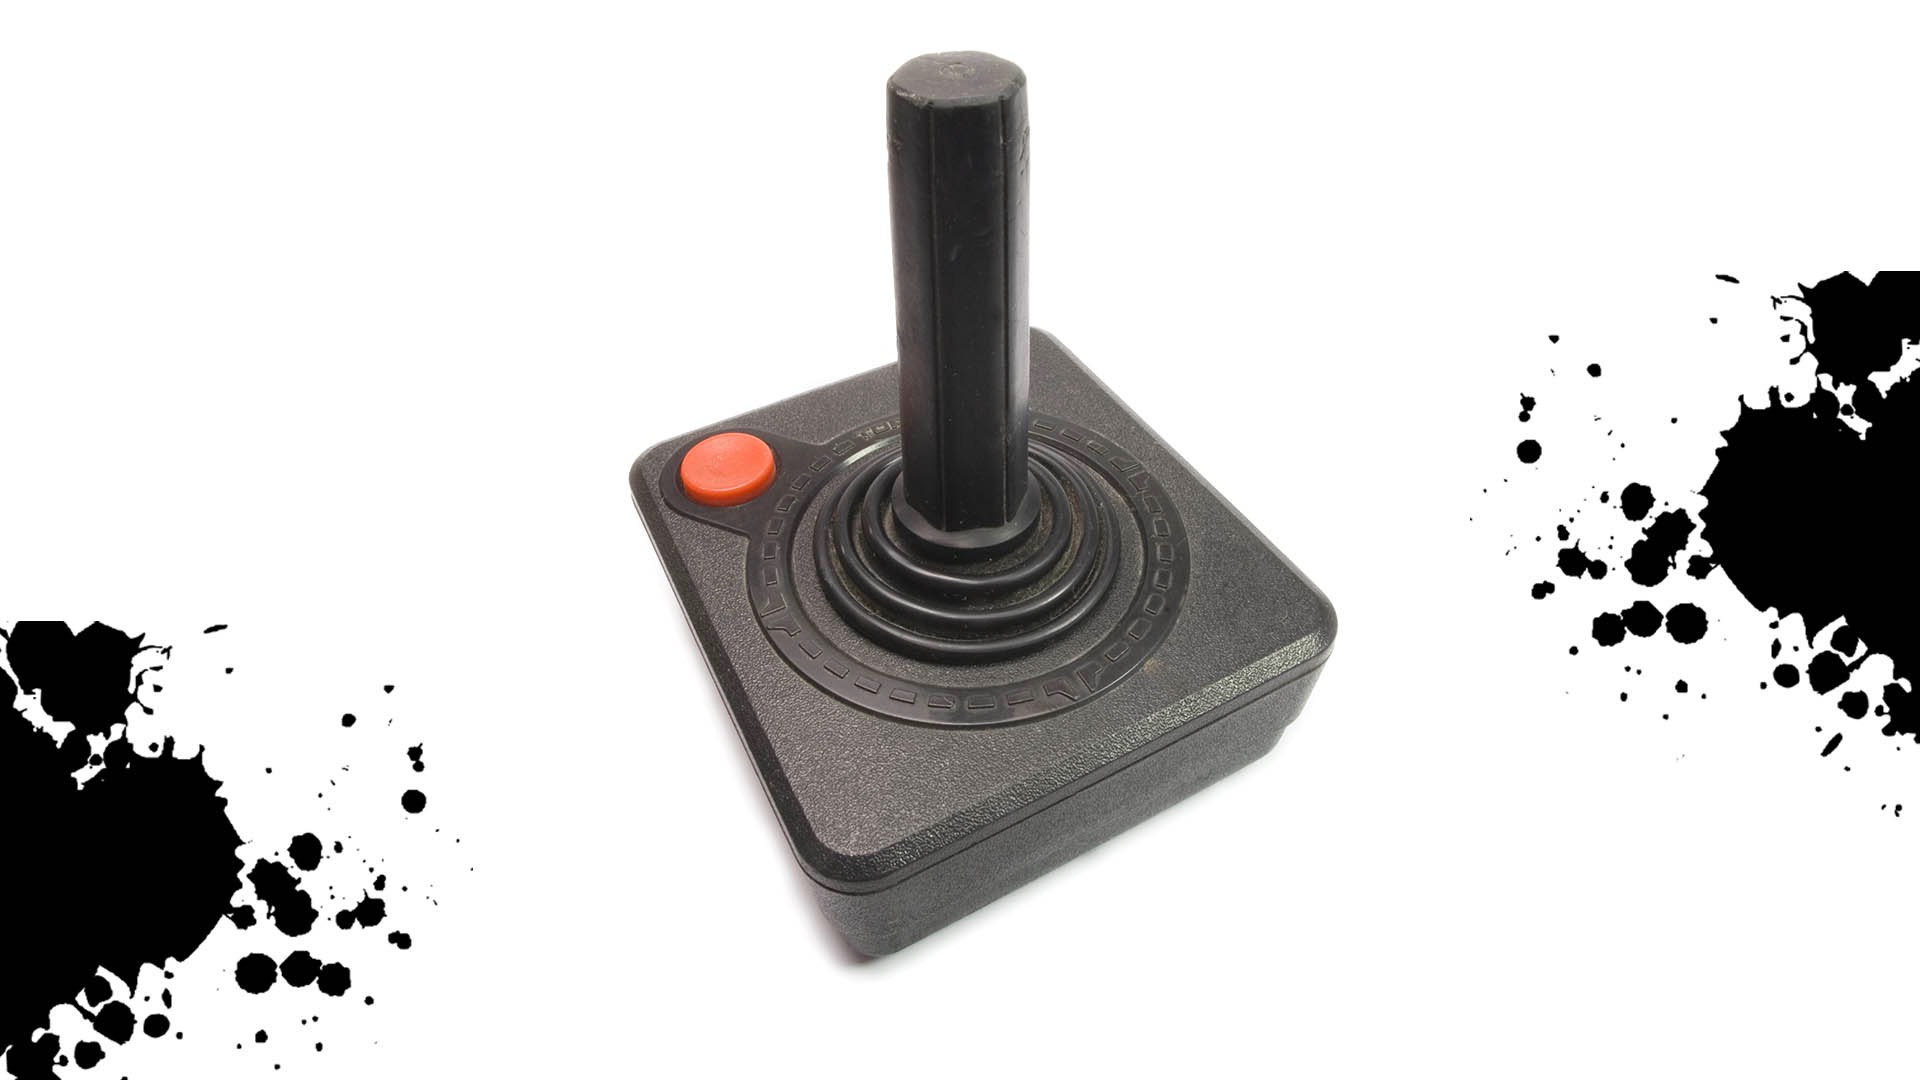 A video game controller